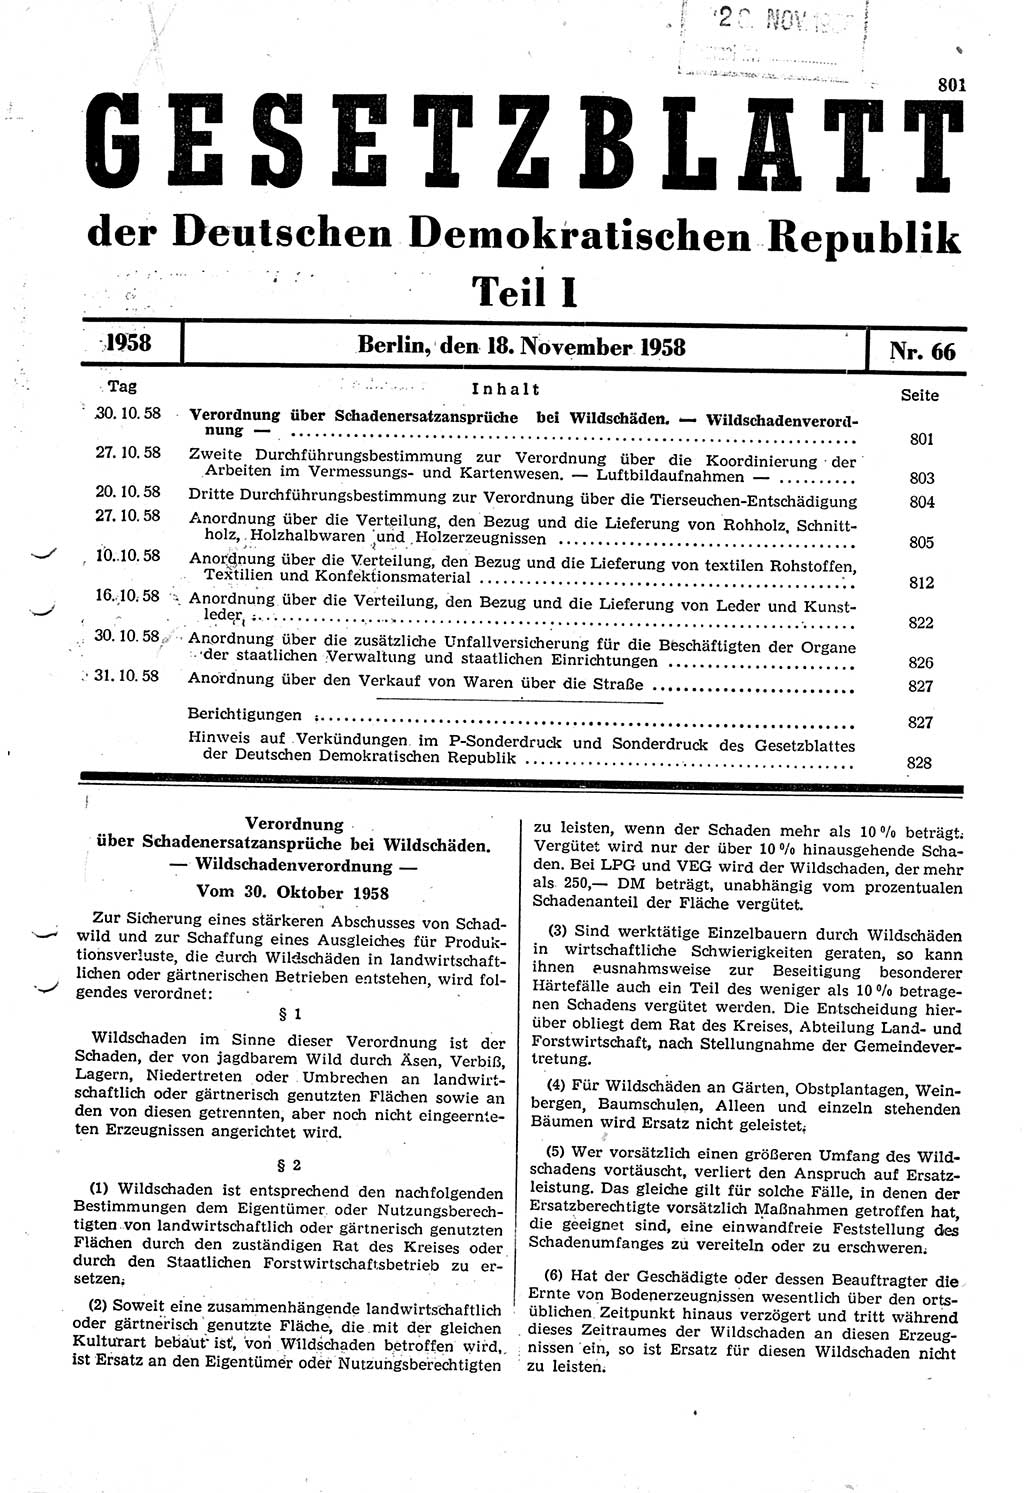 Gesetzblatt (GBl.) der Deutschen Demokratischen Republik (DDR) Teil Ⅰ 1958, Seite 801 (GBl. DDR Ⅰ 1958, S. 801)